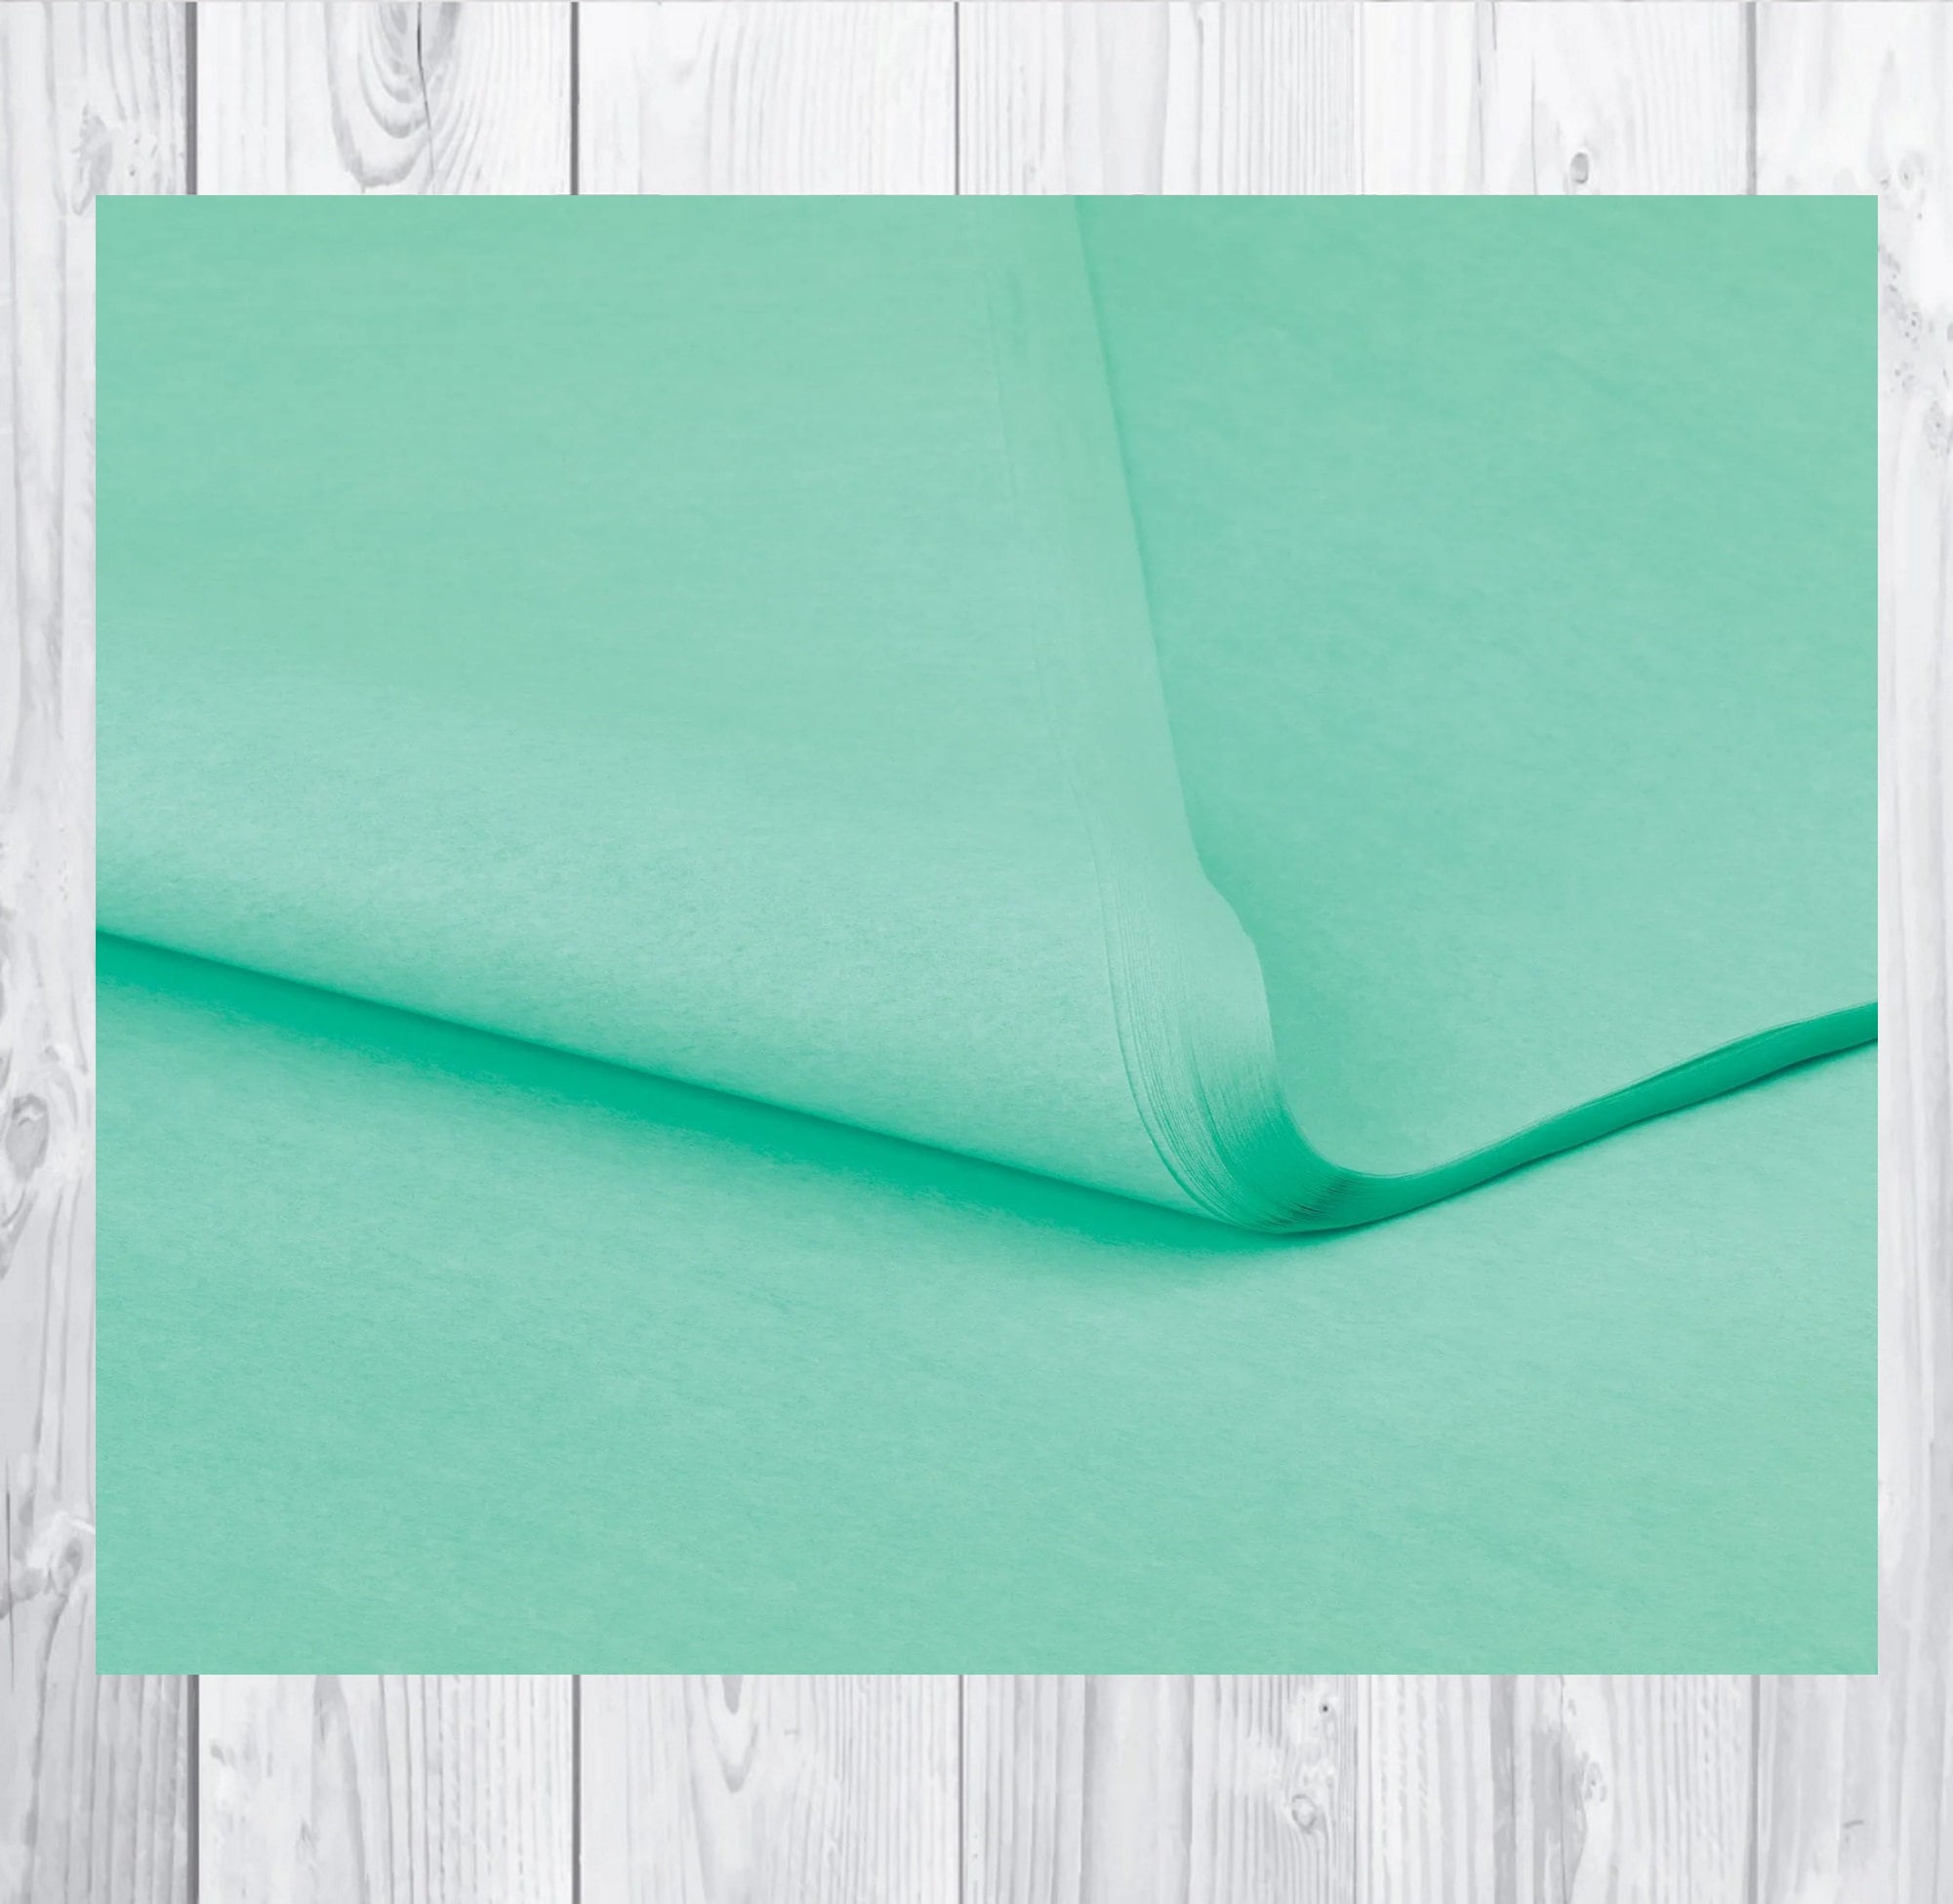 Aqua Blue Tissue Paper, Bulk Tissue Paper Sheets, 20 x 30